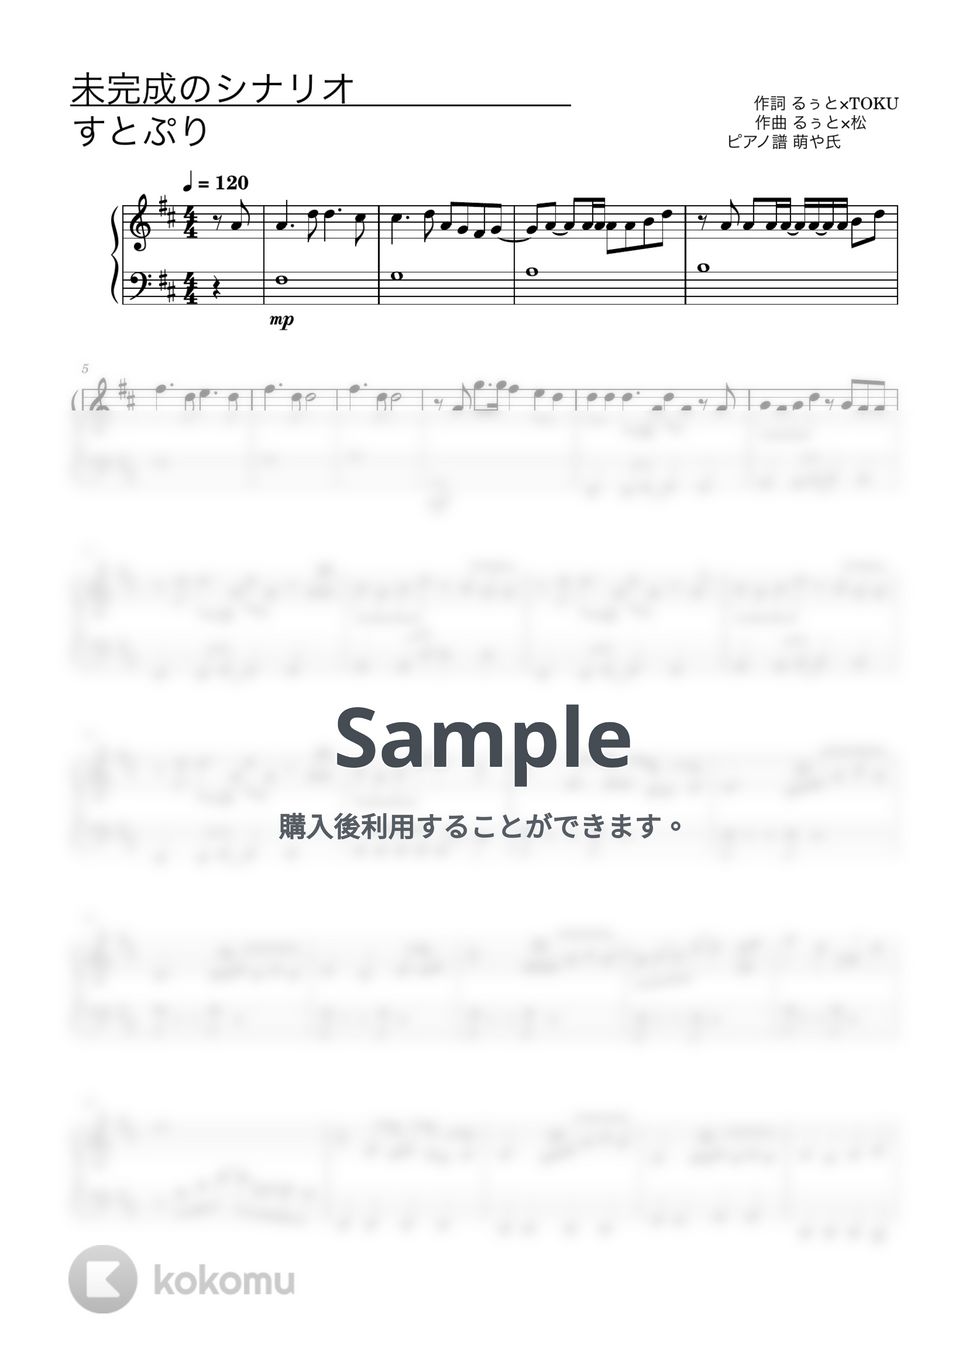 すとぷり - 未完成のシナリオ (ピアノソロ譜) by 萌や氏